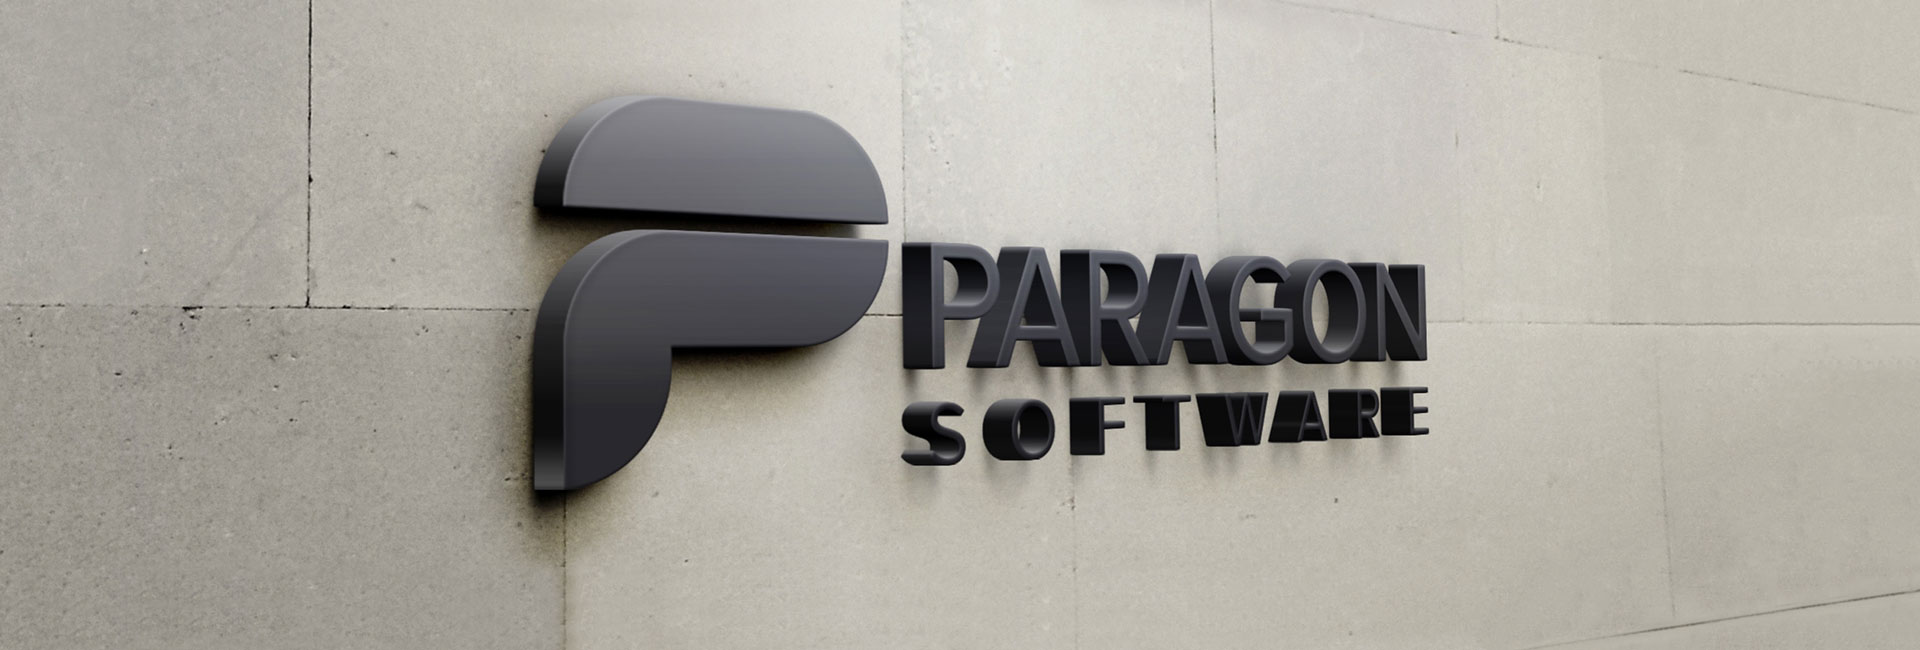 www.paragon-software.com